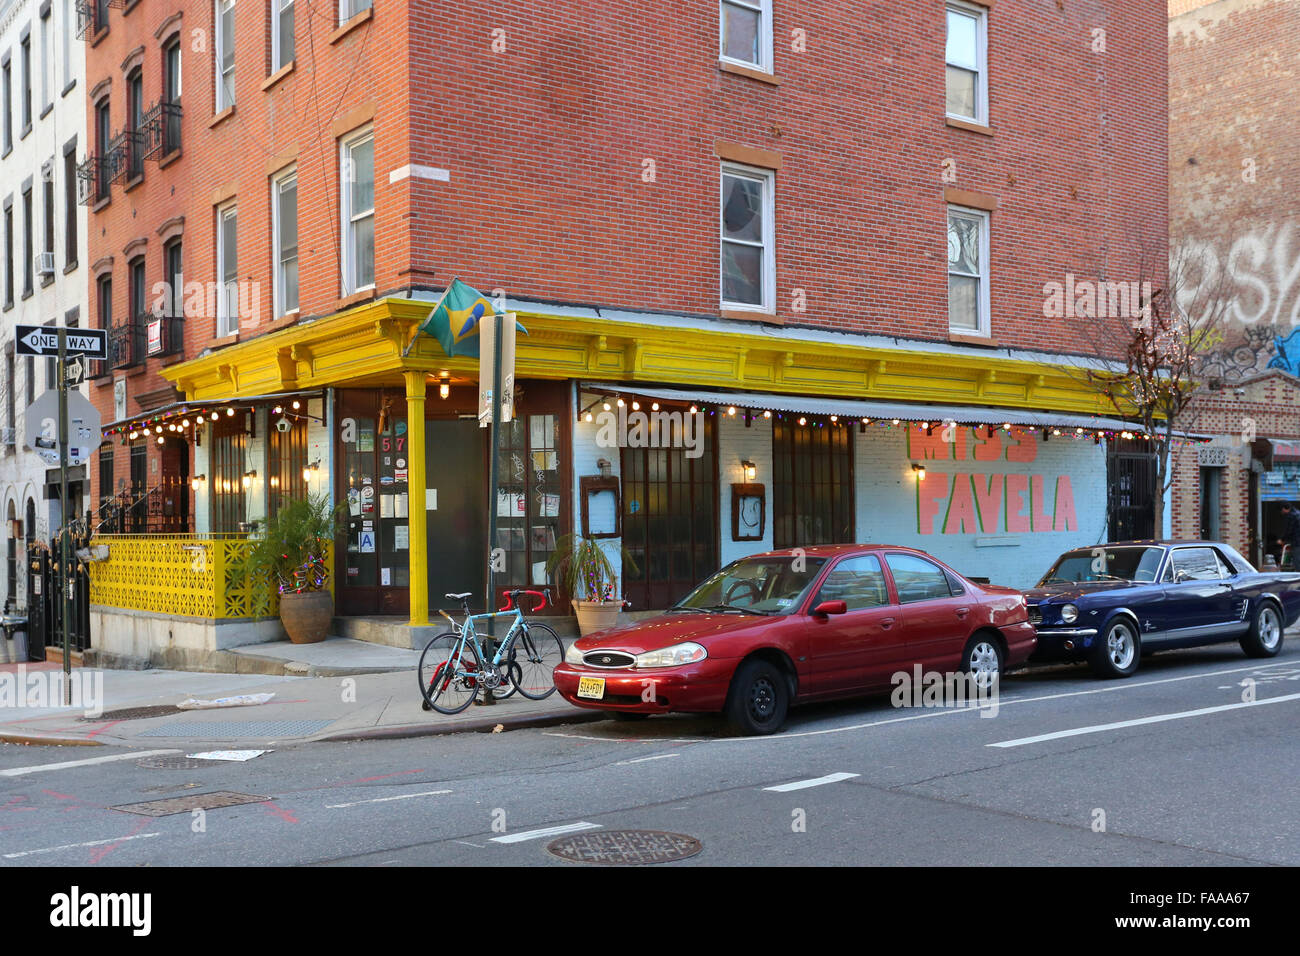 Miss Favela, 57 S 5th St, Brooklyn, NY. Escaparate exterior de un restaurante brasileño en el barrio de Williamsburg. Foto de stock